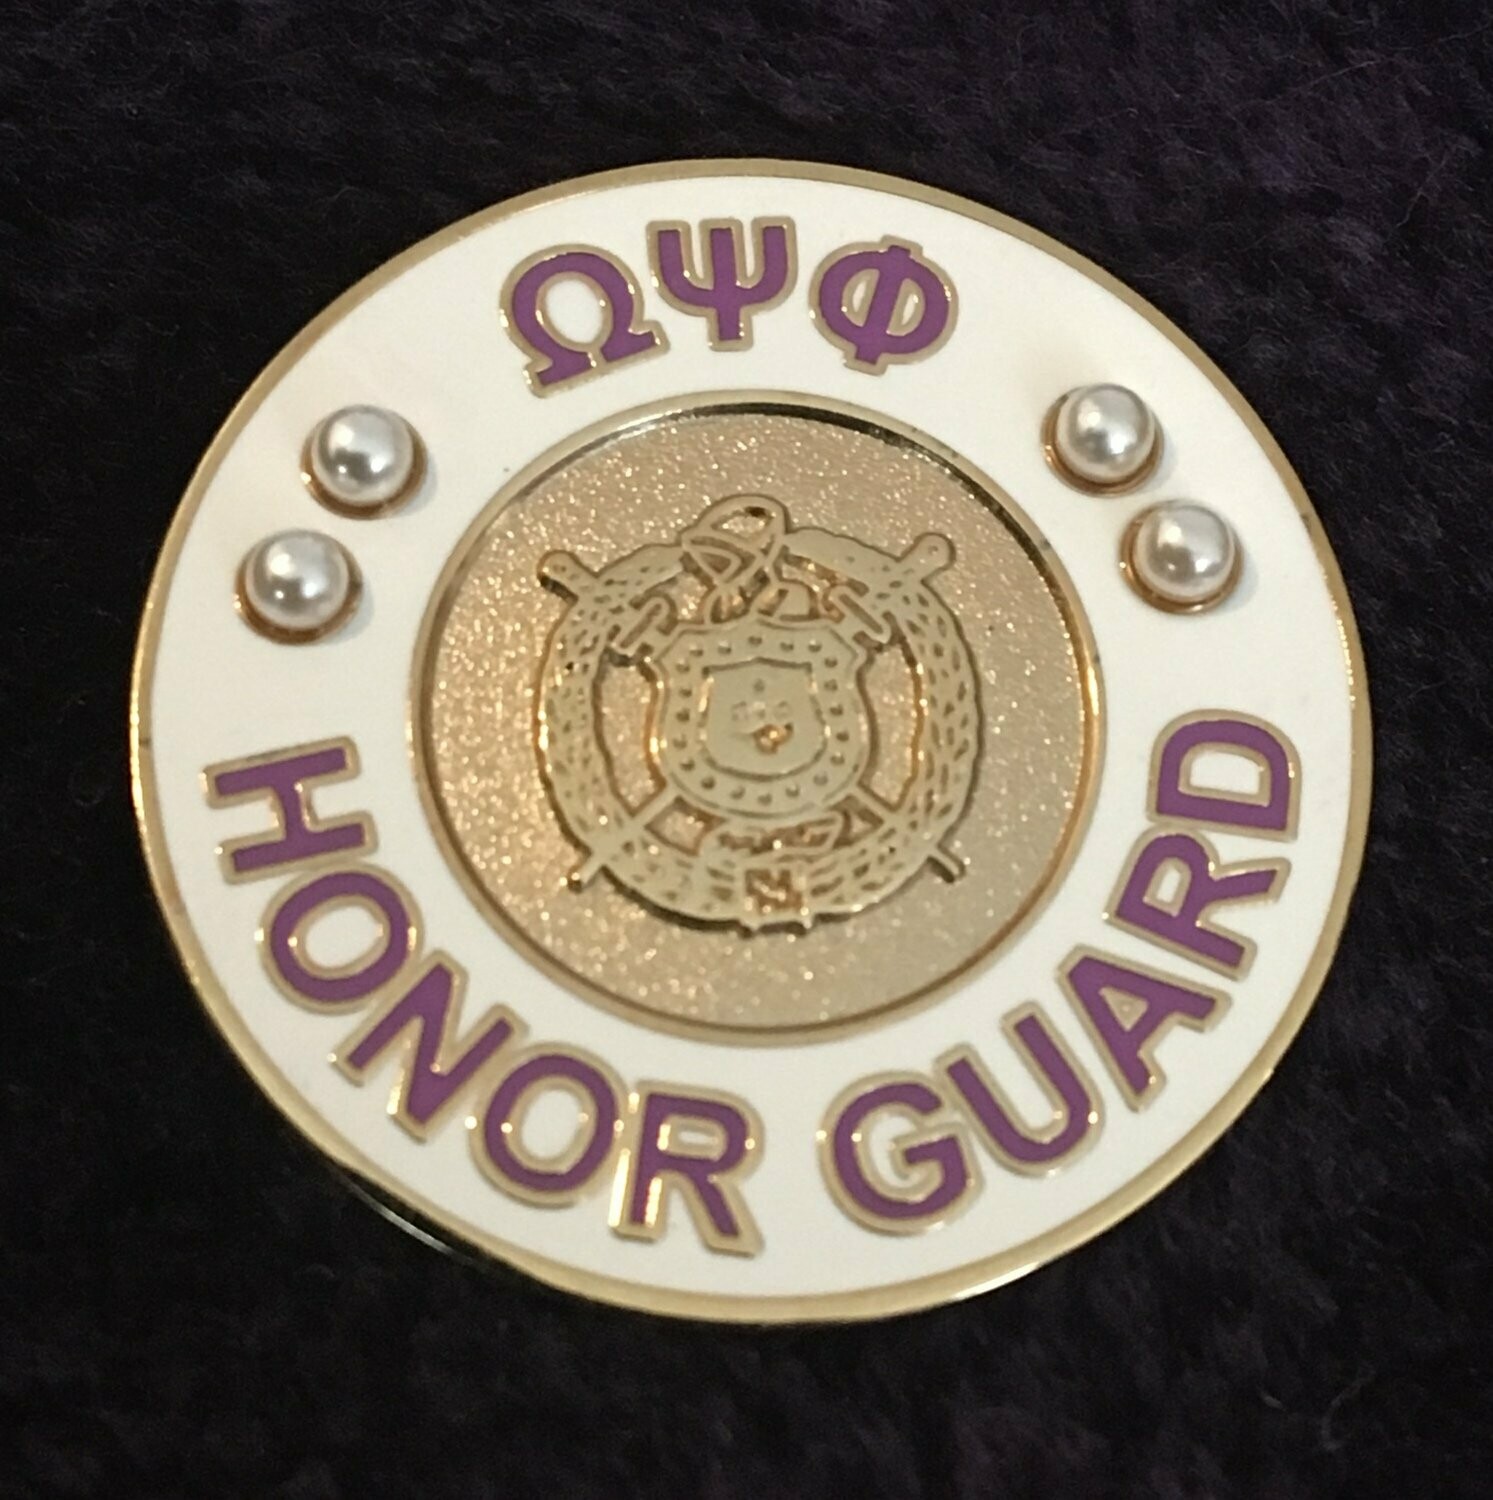 Honor Guard pin